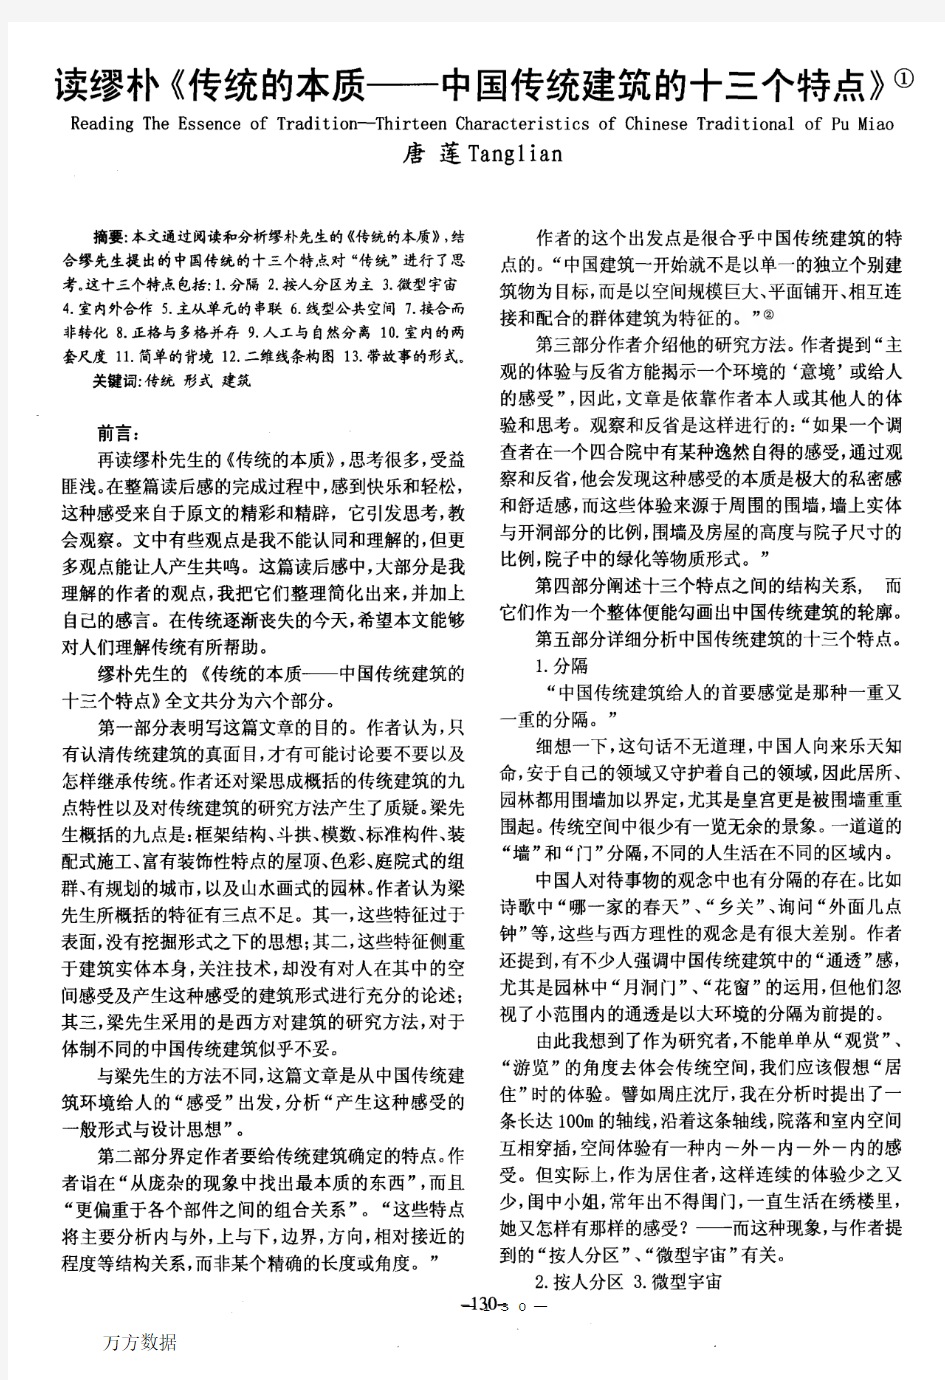 读缪朴《传统的本质——中国传统建筑的十三个特点》